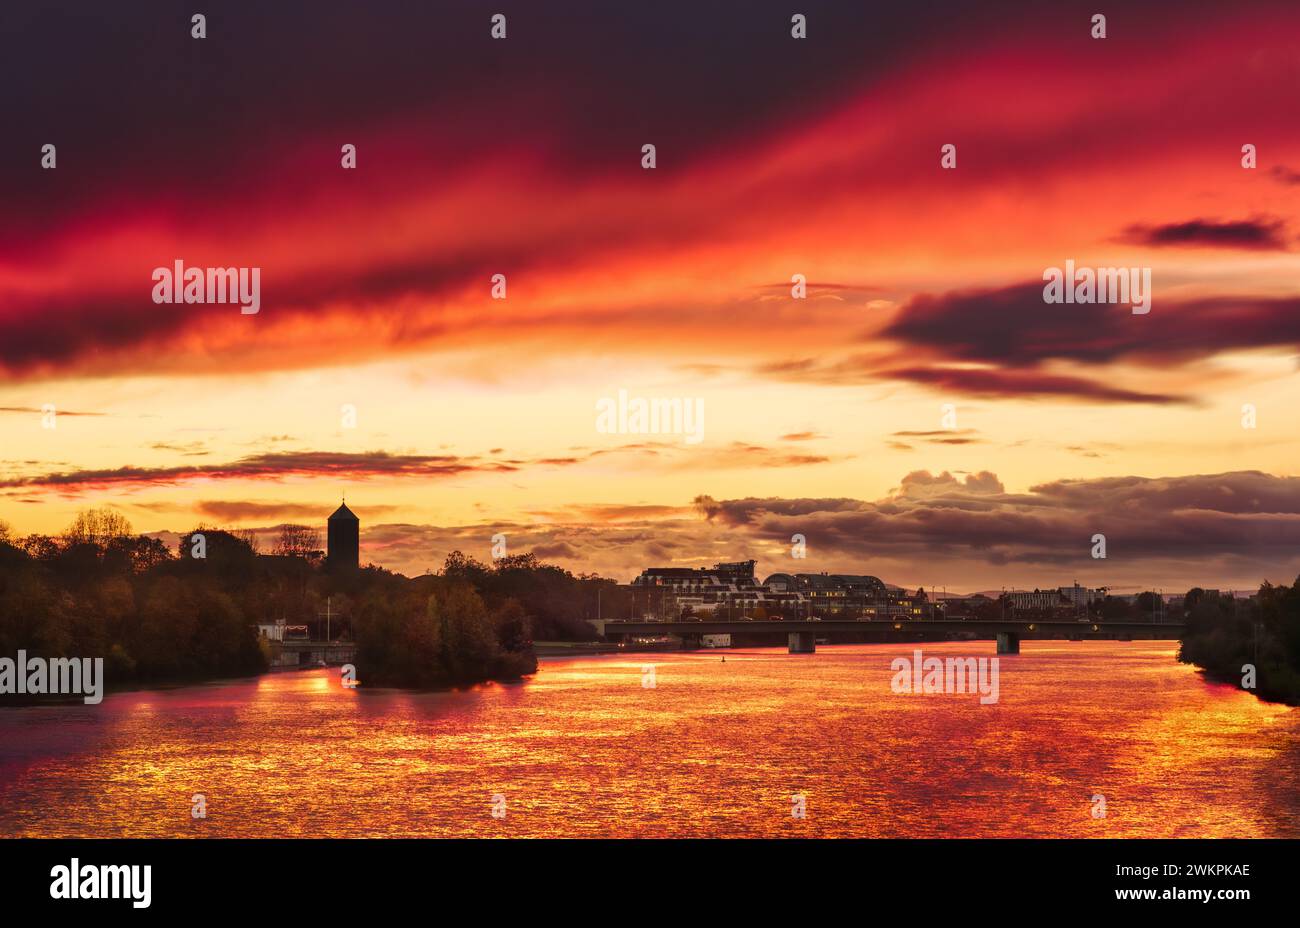 Dramatischer atemberaubender roter Himmel bei Sonnenuntergang, romantische Landschaft über dem Neckar in Heidelberg, Deutschland Stockfoto